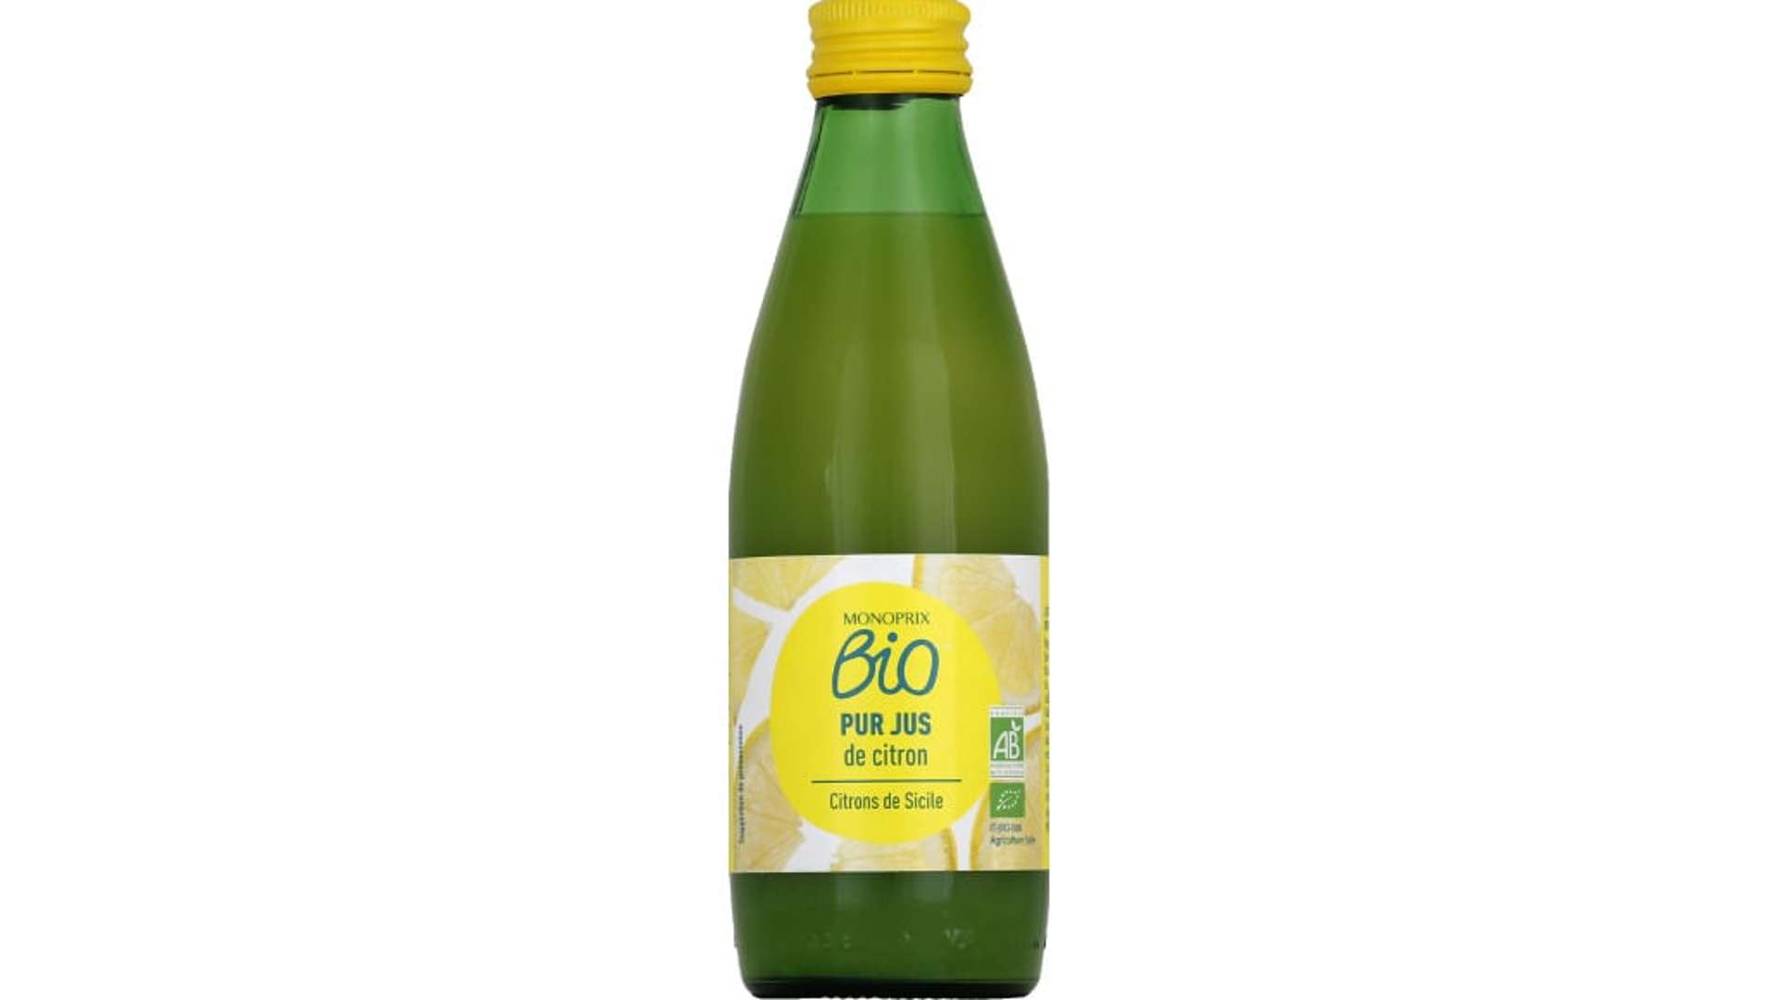 Monoprix Bio Pur jus de citron bio Le flacon de 250 ml